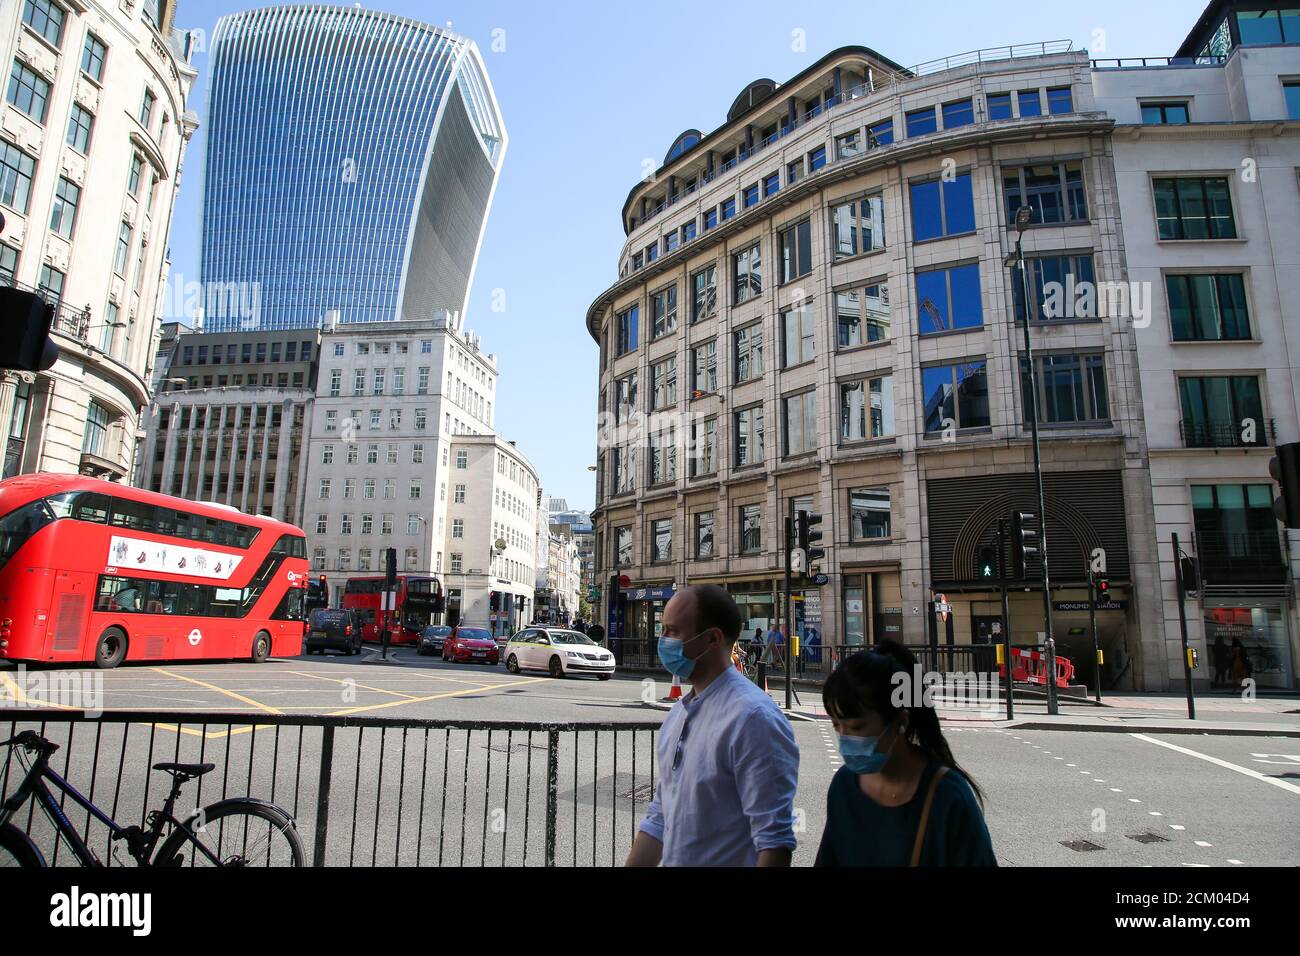 Ein Paar mit Gesichtsmasken in einer fast leeren Londoner City, die normalerweise mit Stadtarbeitern beschäftigt wäre.in den letzten Tagen wurden in Großbritannien über 1,000 neue COVID19-Fälle bestätigt und die Zahl scheint rapide zu steigen. Stockfoto